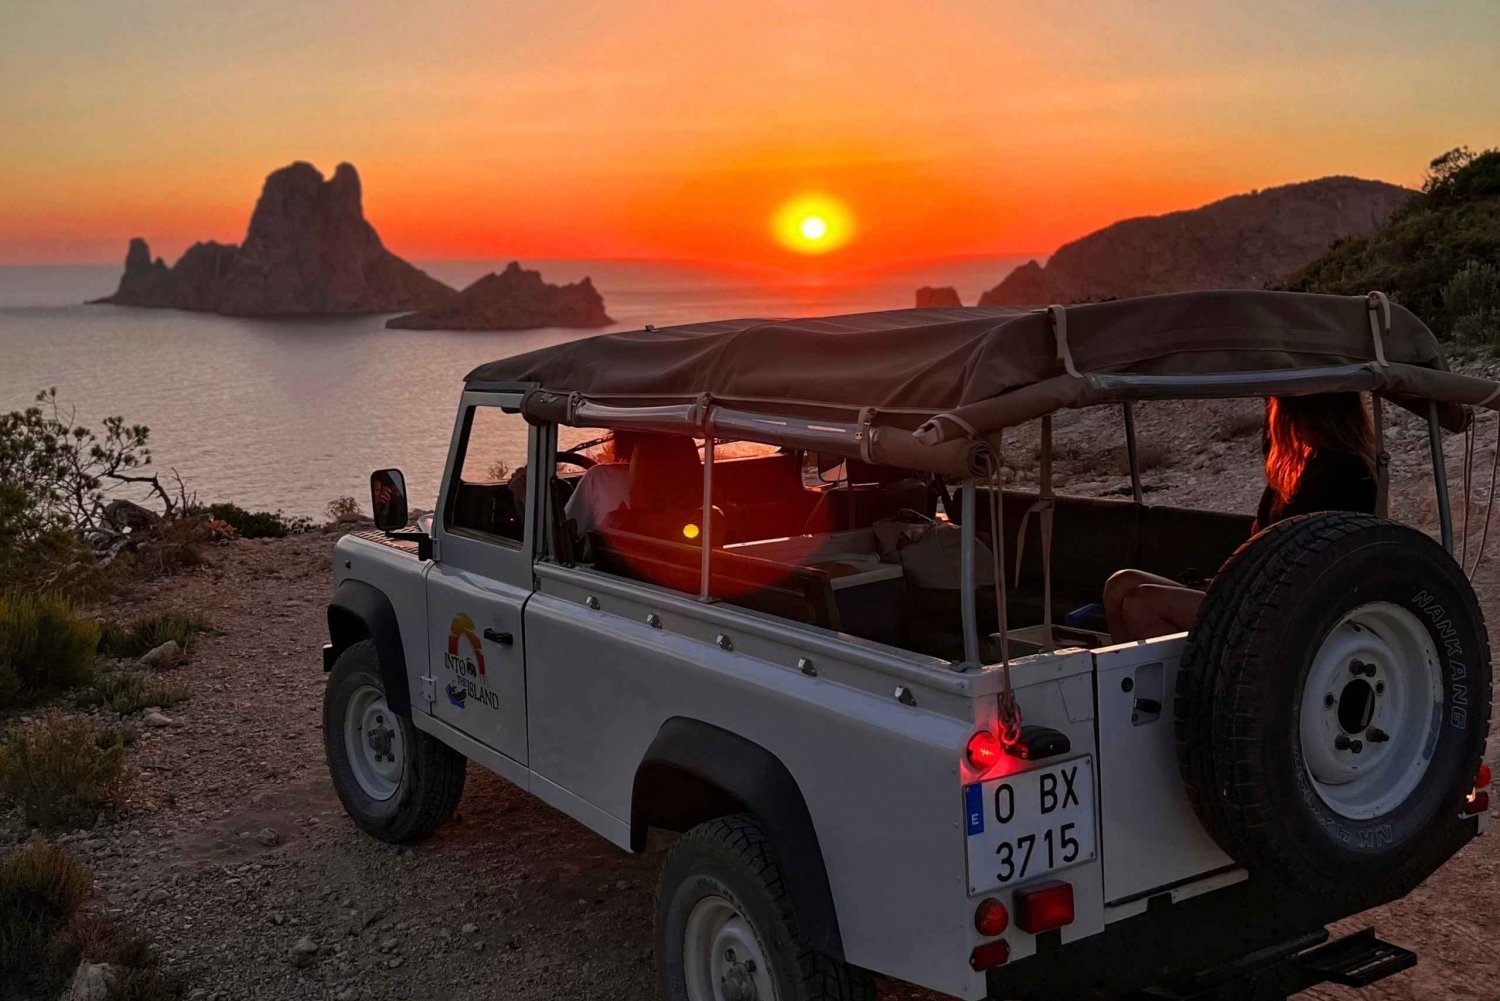 Ibiza: Gita combinata in barca, safari in 4x4 ed escursione al tramonto a Es Vedra